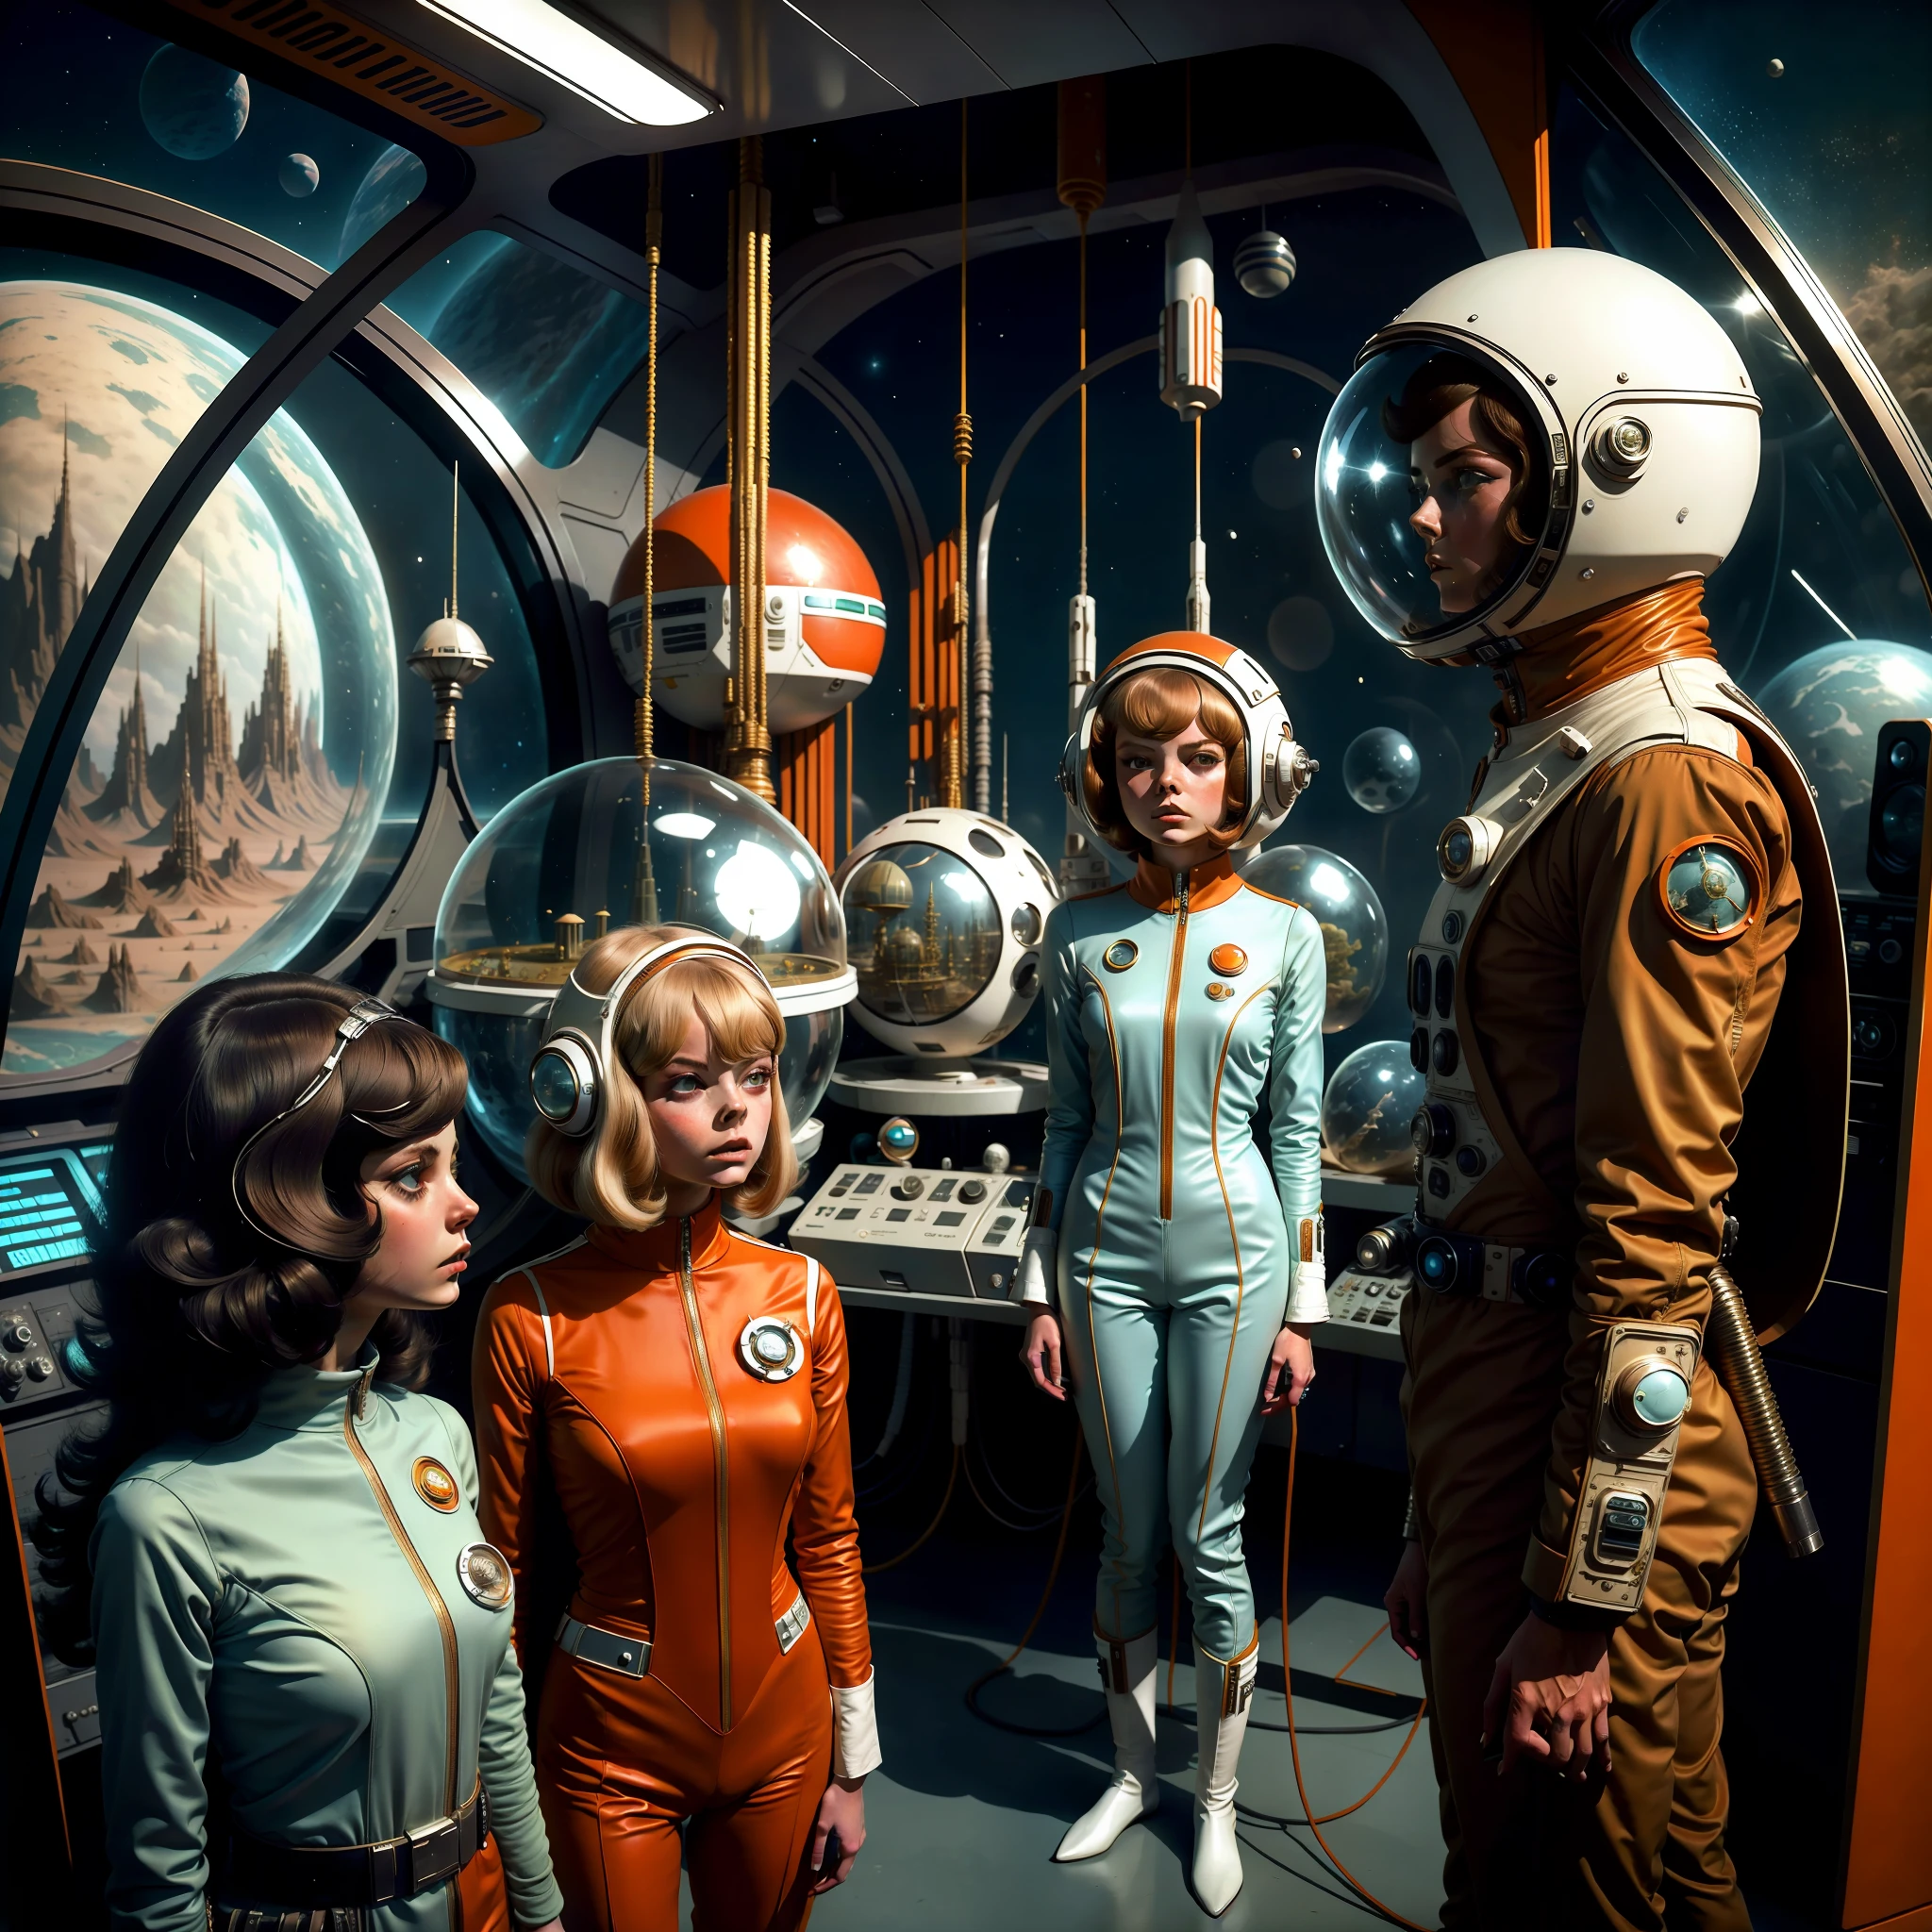 宇宙服を着た2人の女性が宇宙服を着た男性の隣に立つ, レトロなサイエンス - FI による画像, 1 9 6 0の科学 - fi, 7 0 年代のヴィンテージ SF - エスティロ フィ, アンドロイドとしてのエル・ファニング, レトロなSF映画, 7 0 s サイエンスフィクション, レトロサイエンス - SF映画, 1970年代のSF映画